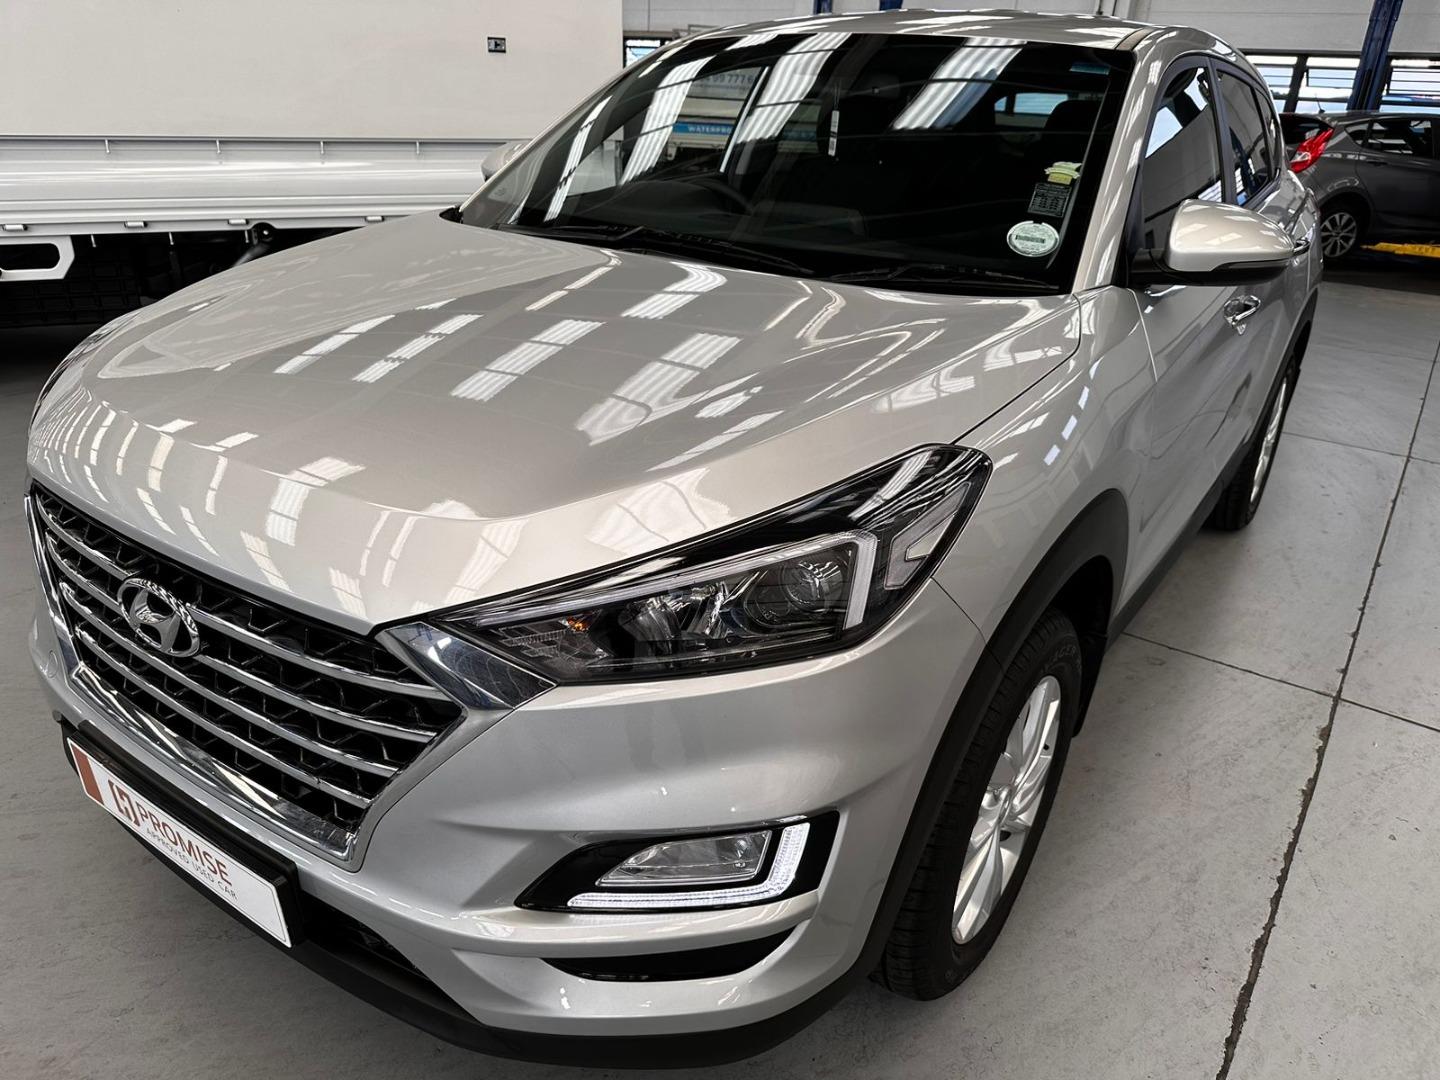 2020 Hyundai Tucson 2.0 Premium For Sale